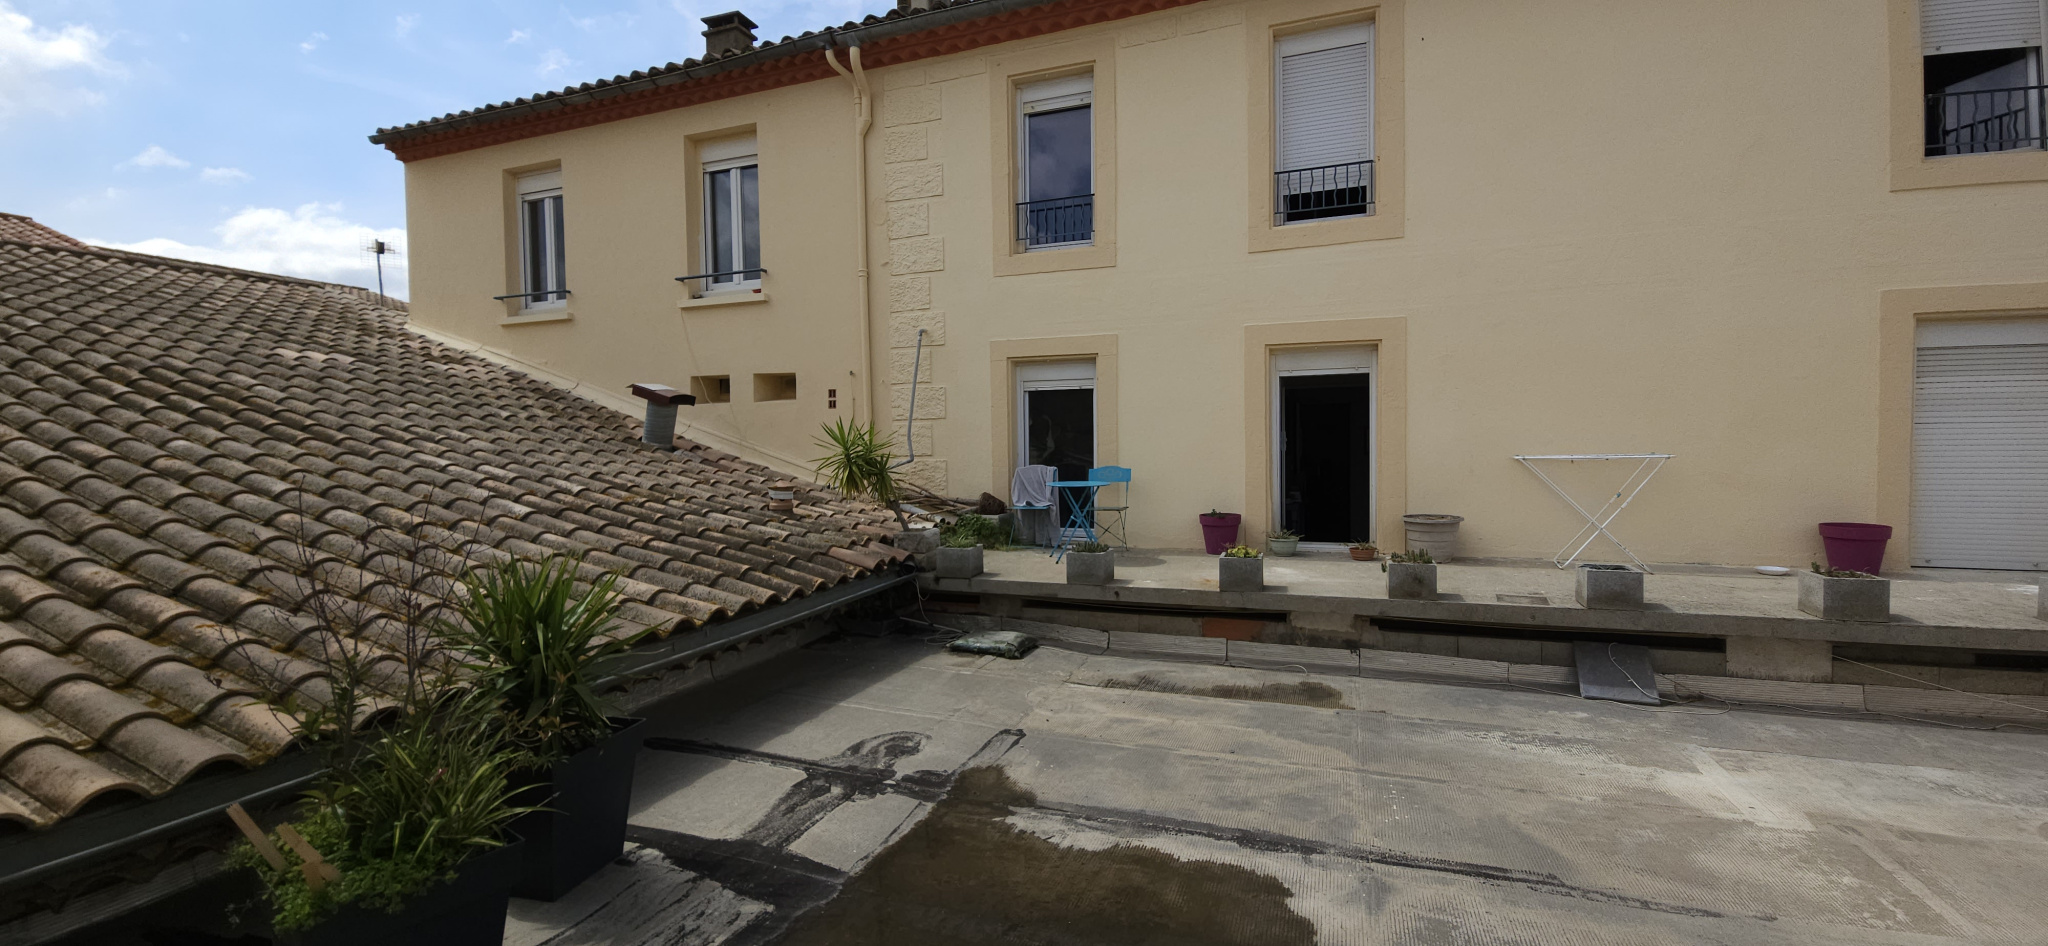 Maison Villerouge-Termenès 135000€ Grimois Immobilier